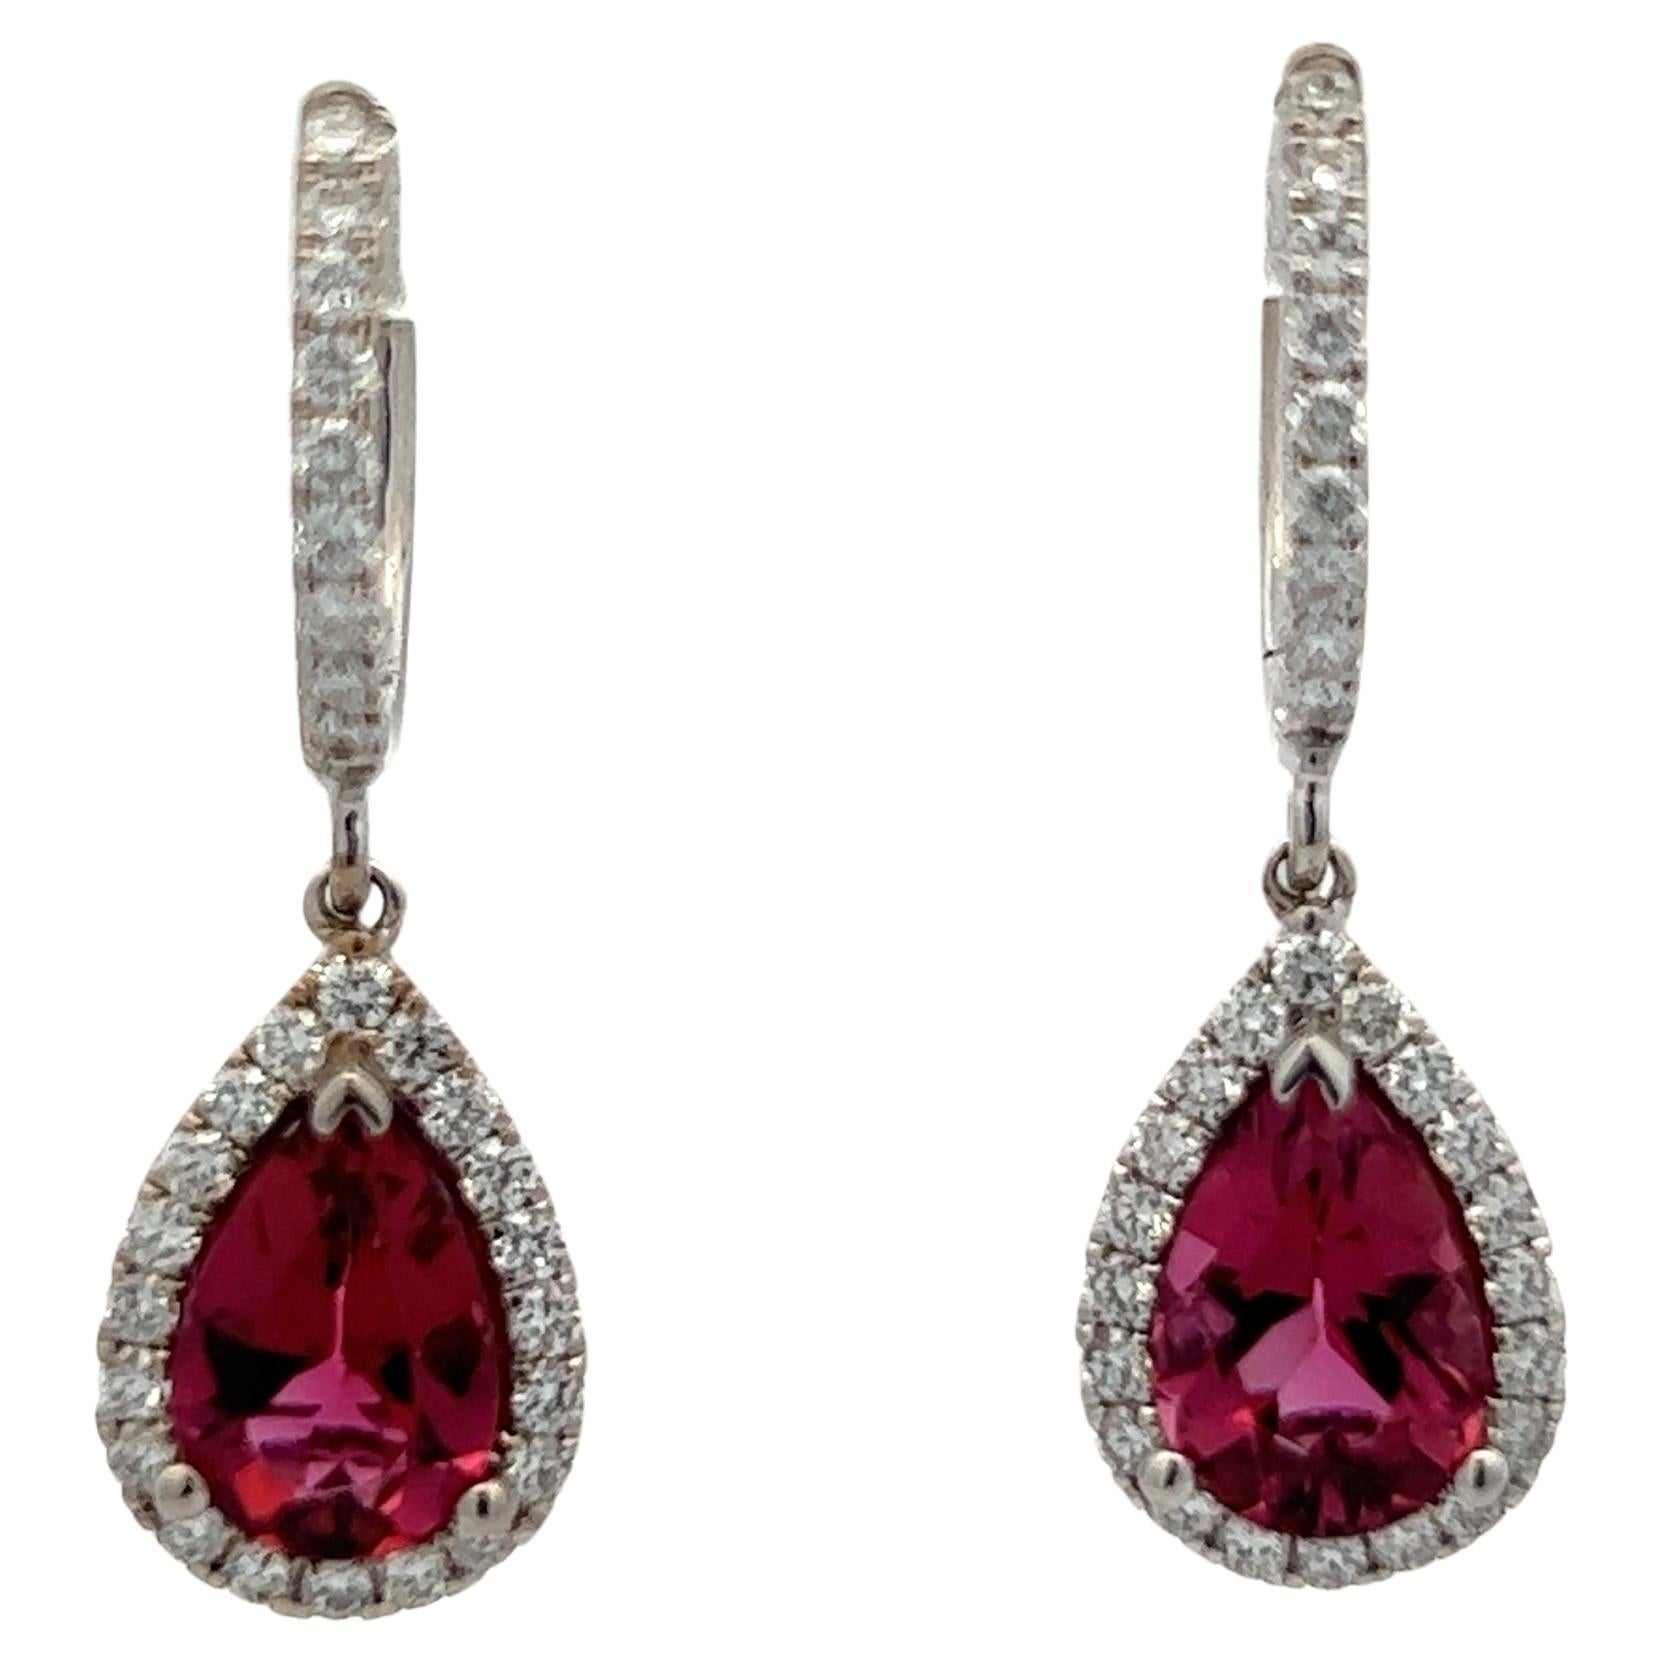 Diamond Rubellite Tourmaline Drop Earrings 18k W Gold 2.93 TCW Certified